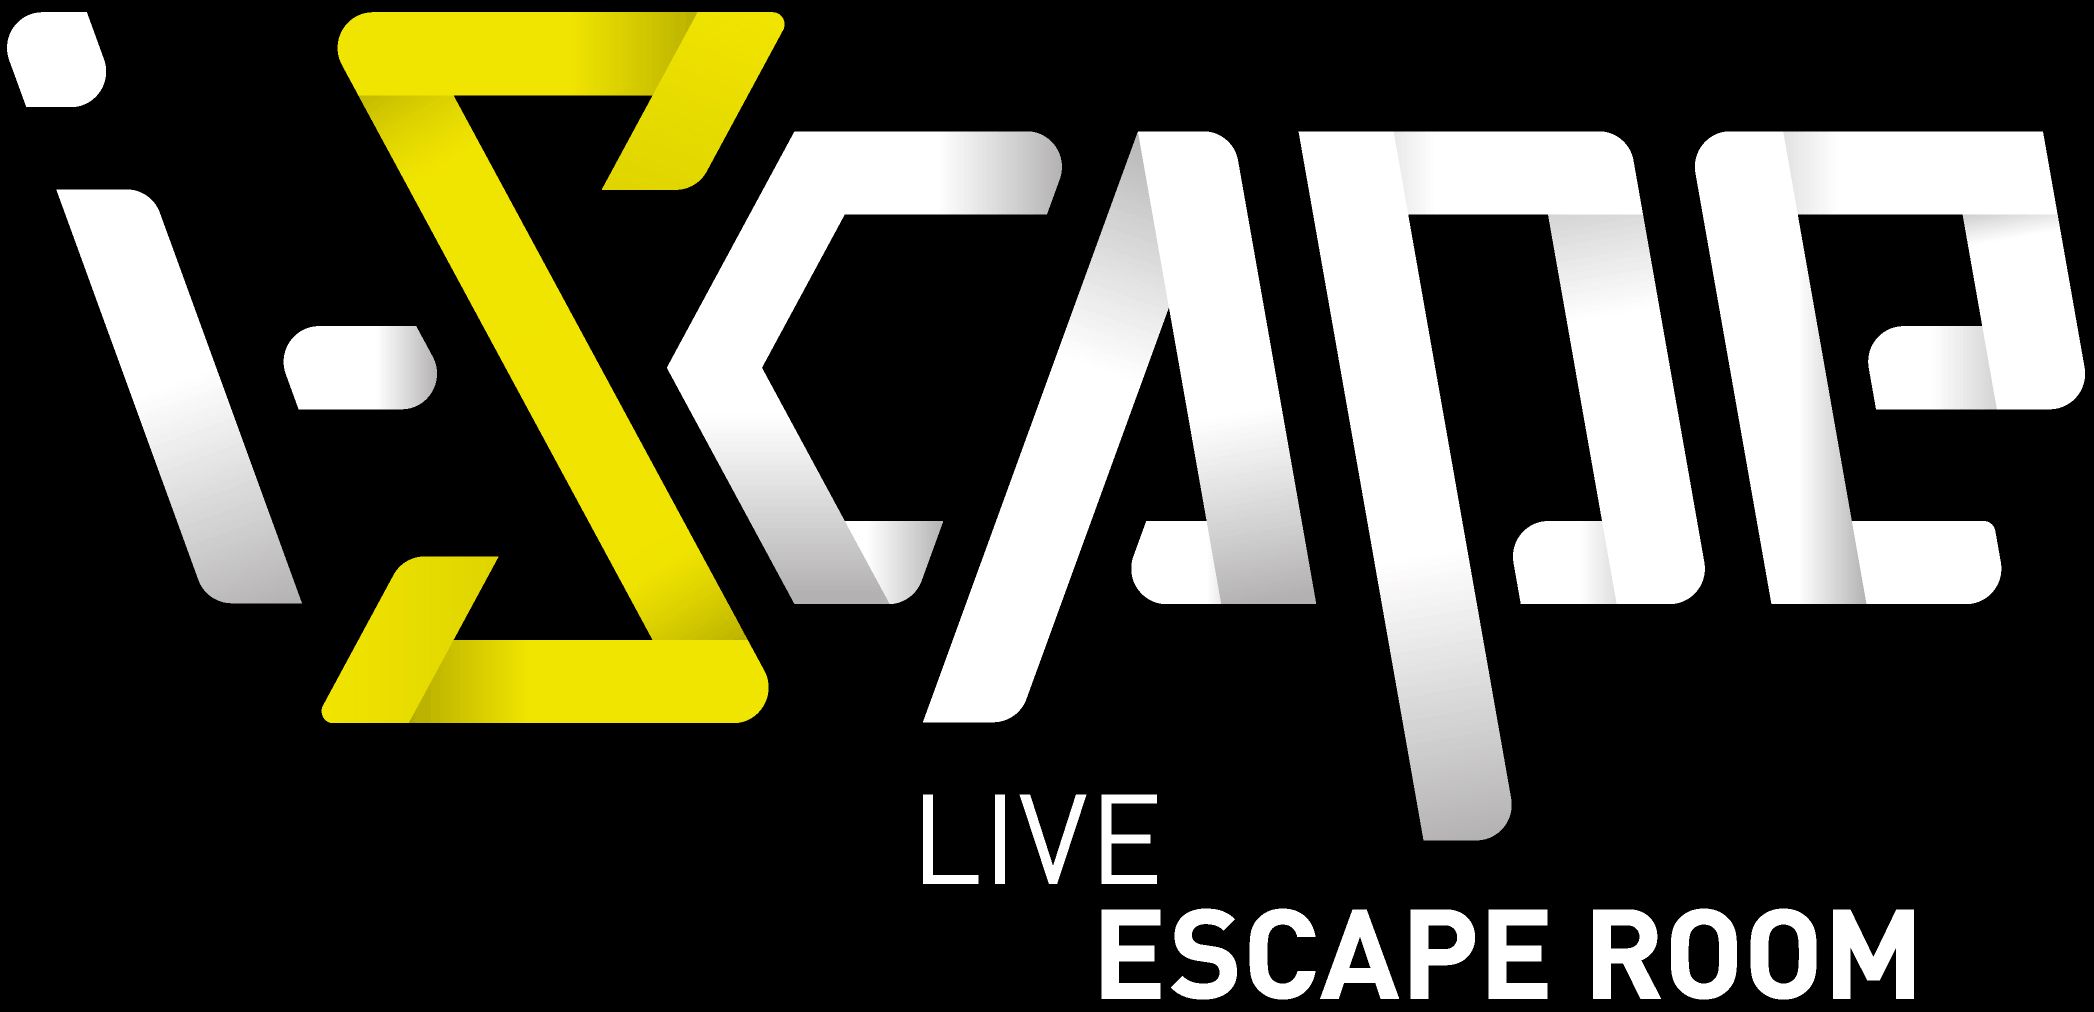 I-Scape - Escape Room - Vaise